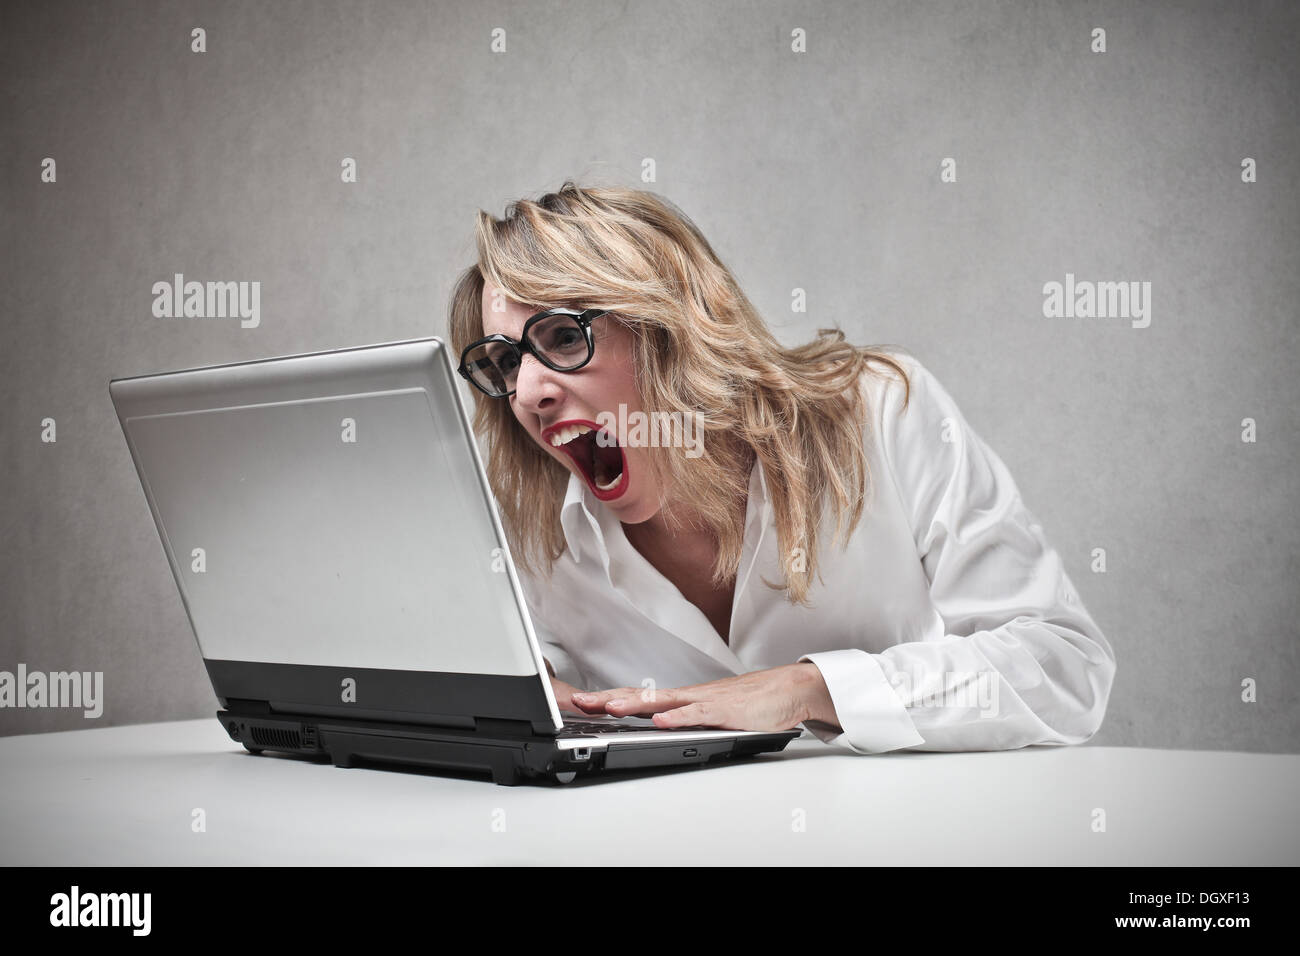 Femme blonde en colère crier contre un ordinateur portable Banque D'Images